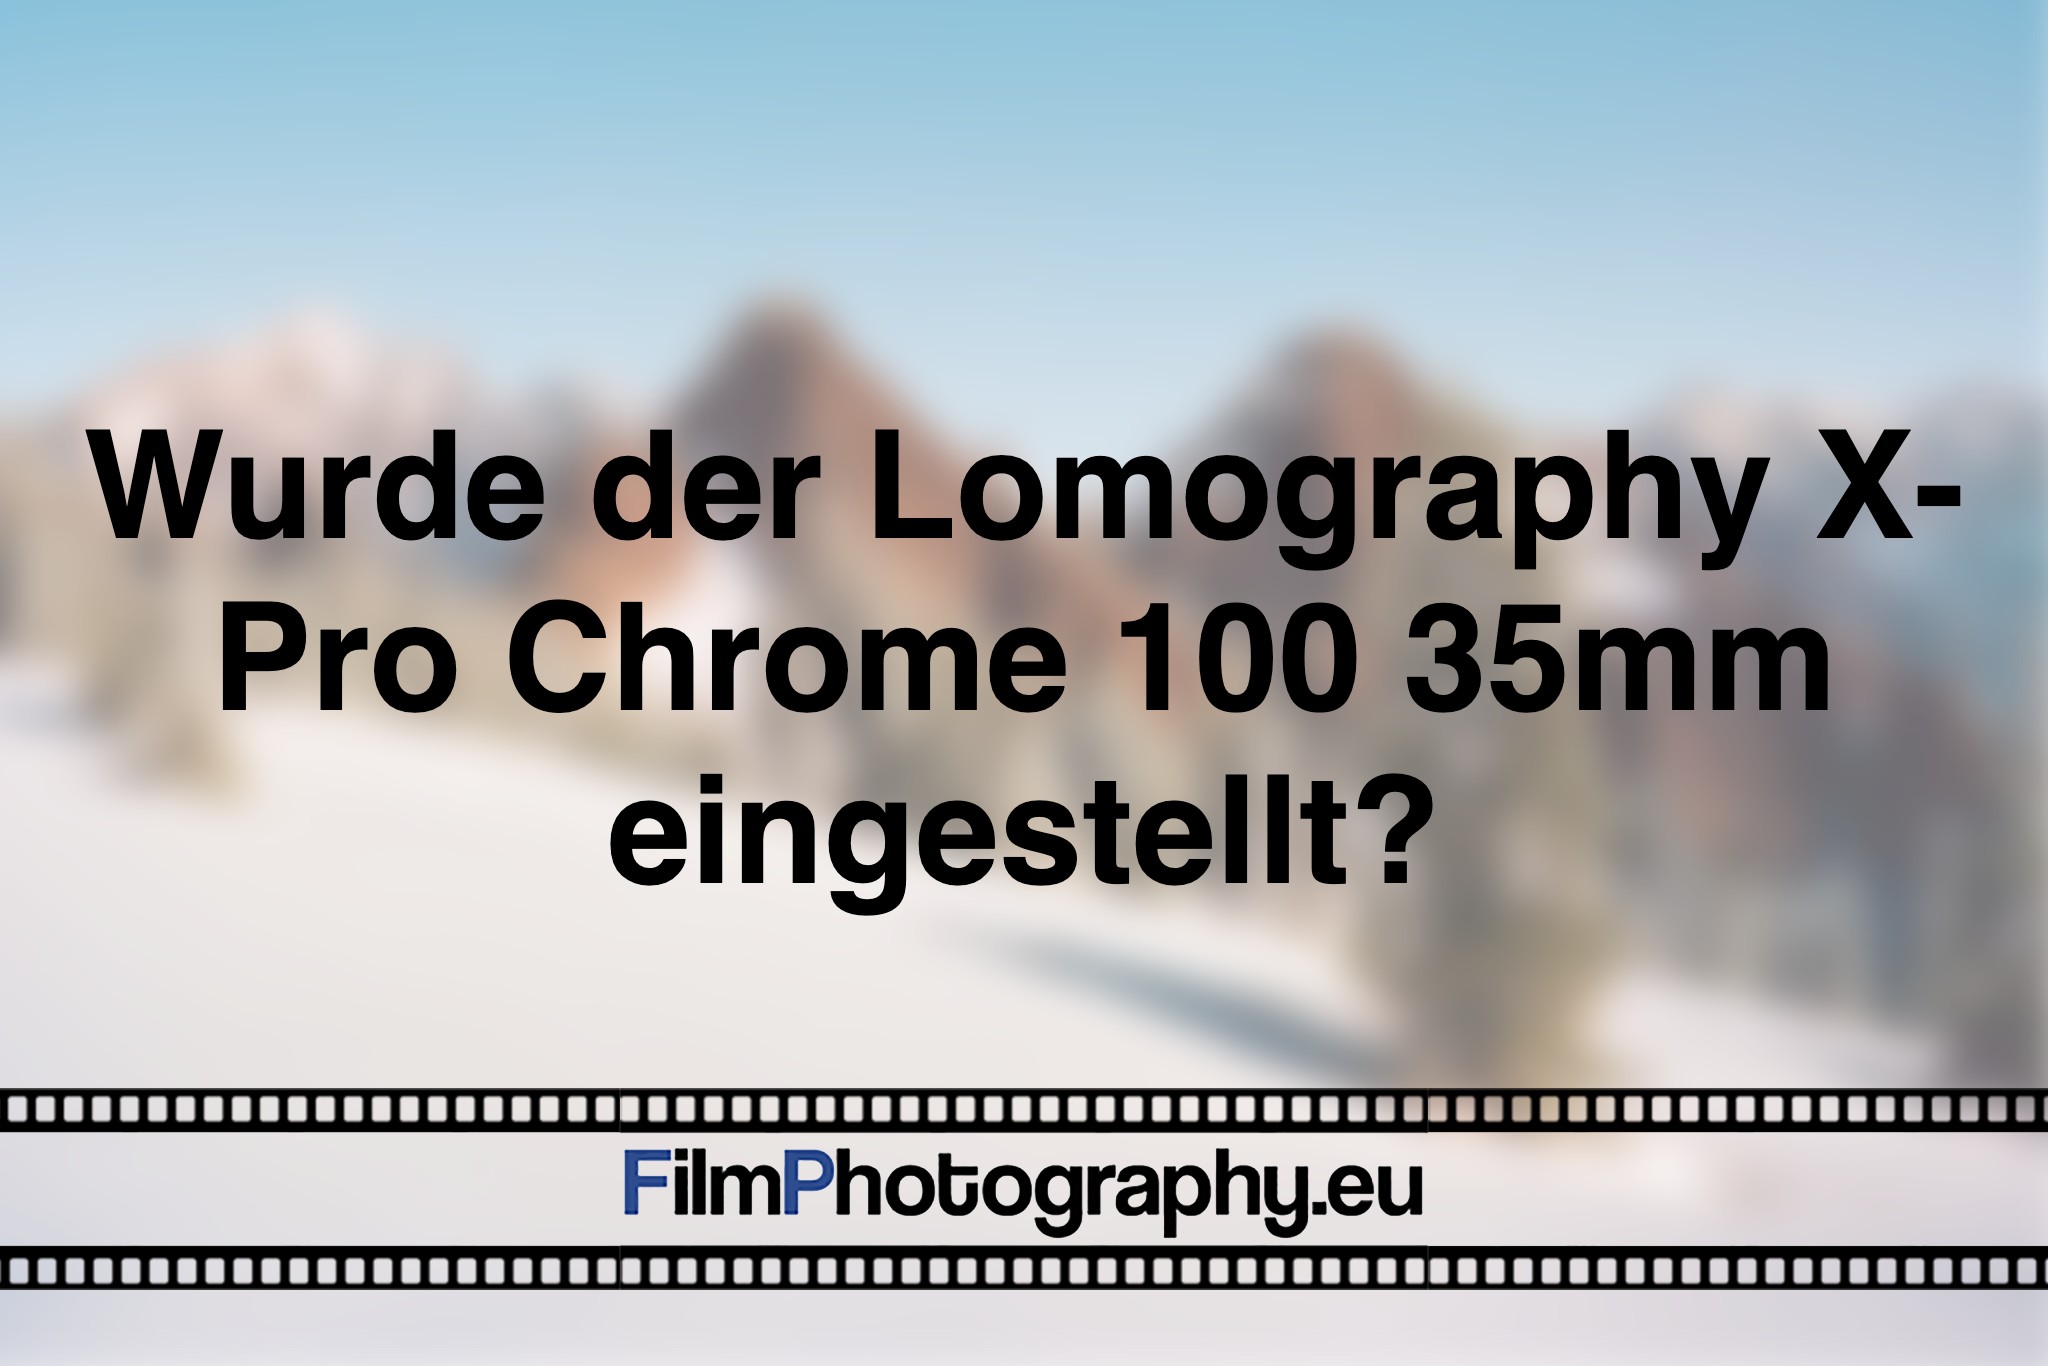 wurde-der-lomography-x-pro-chrome-100-35mm-eingestellt-photo-bnv